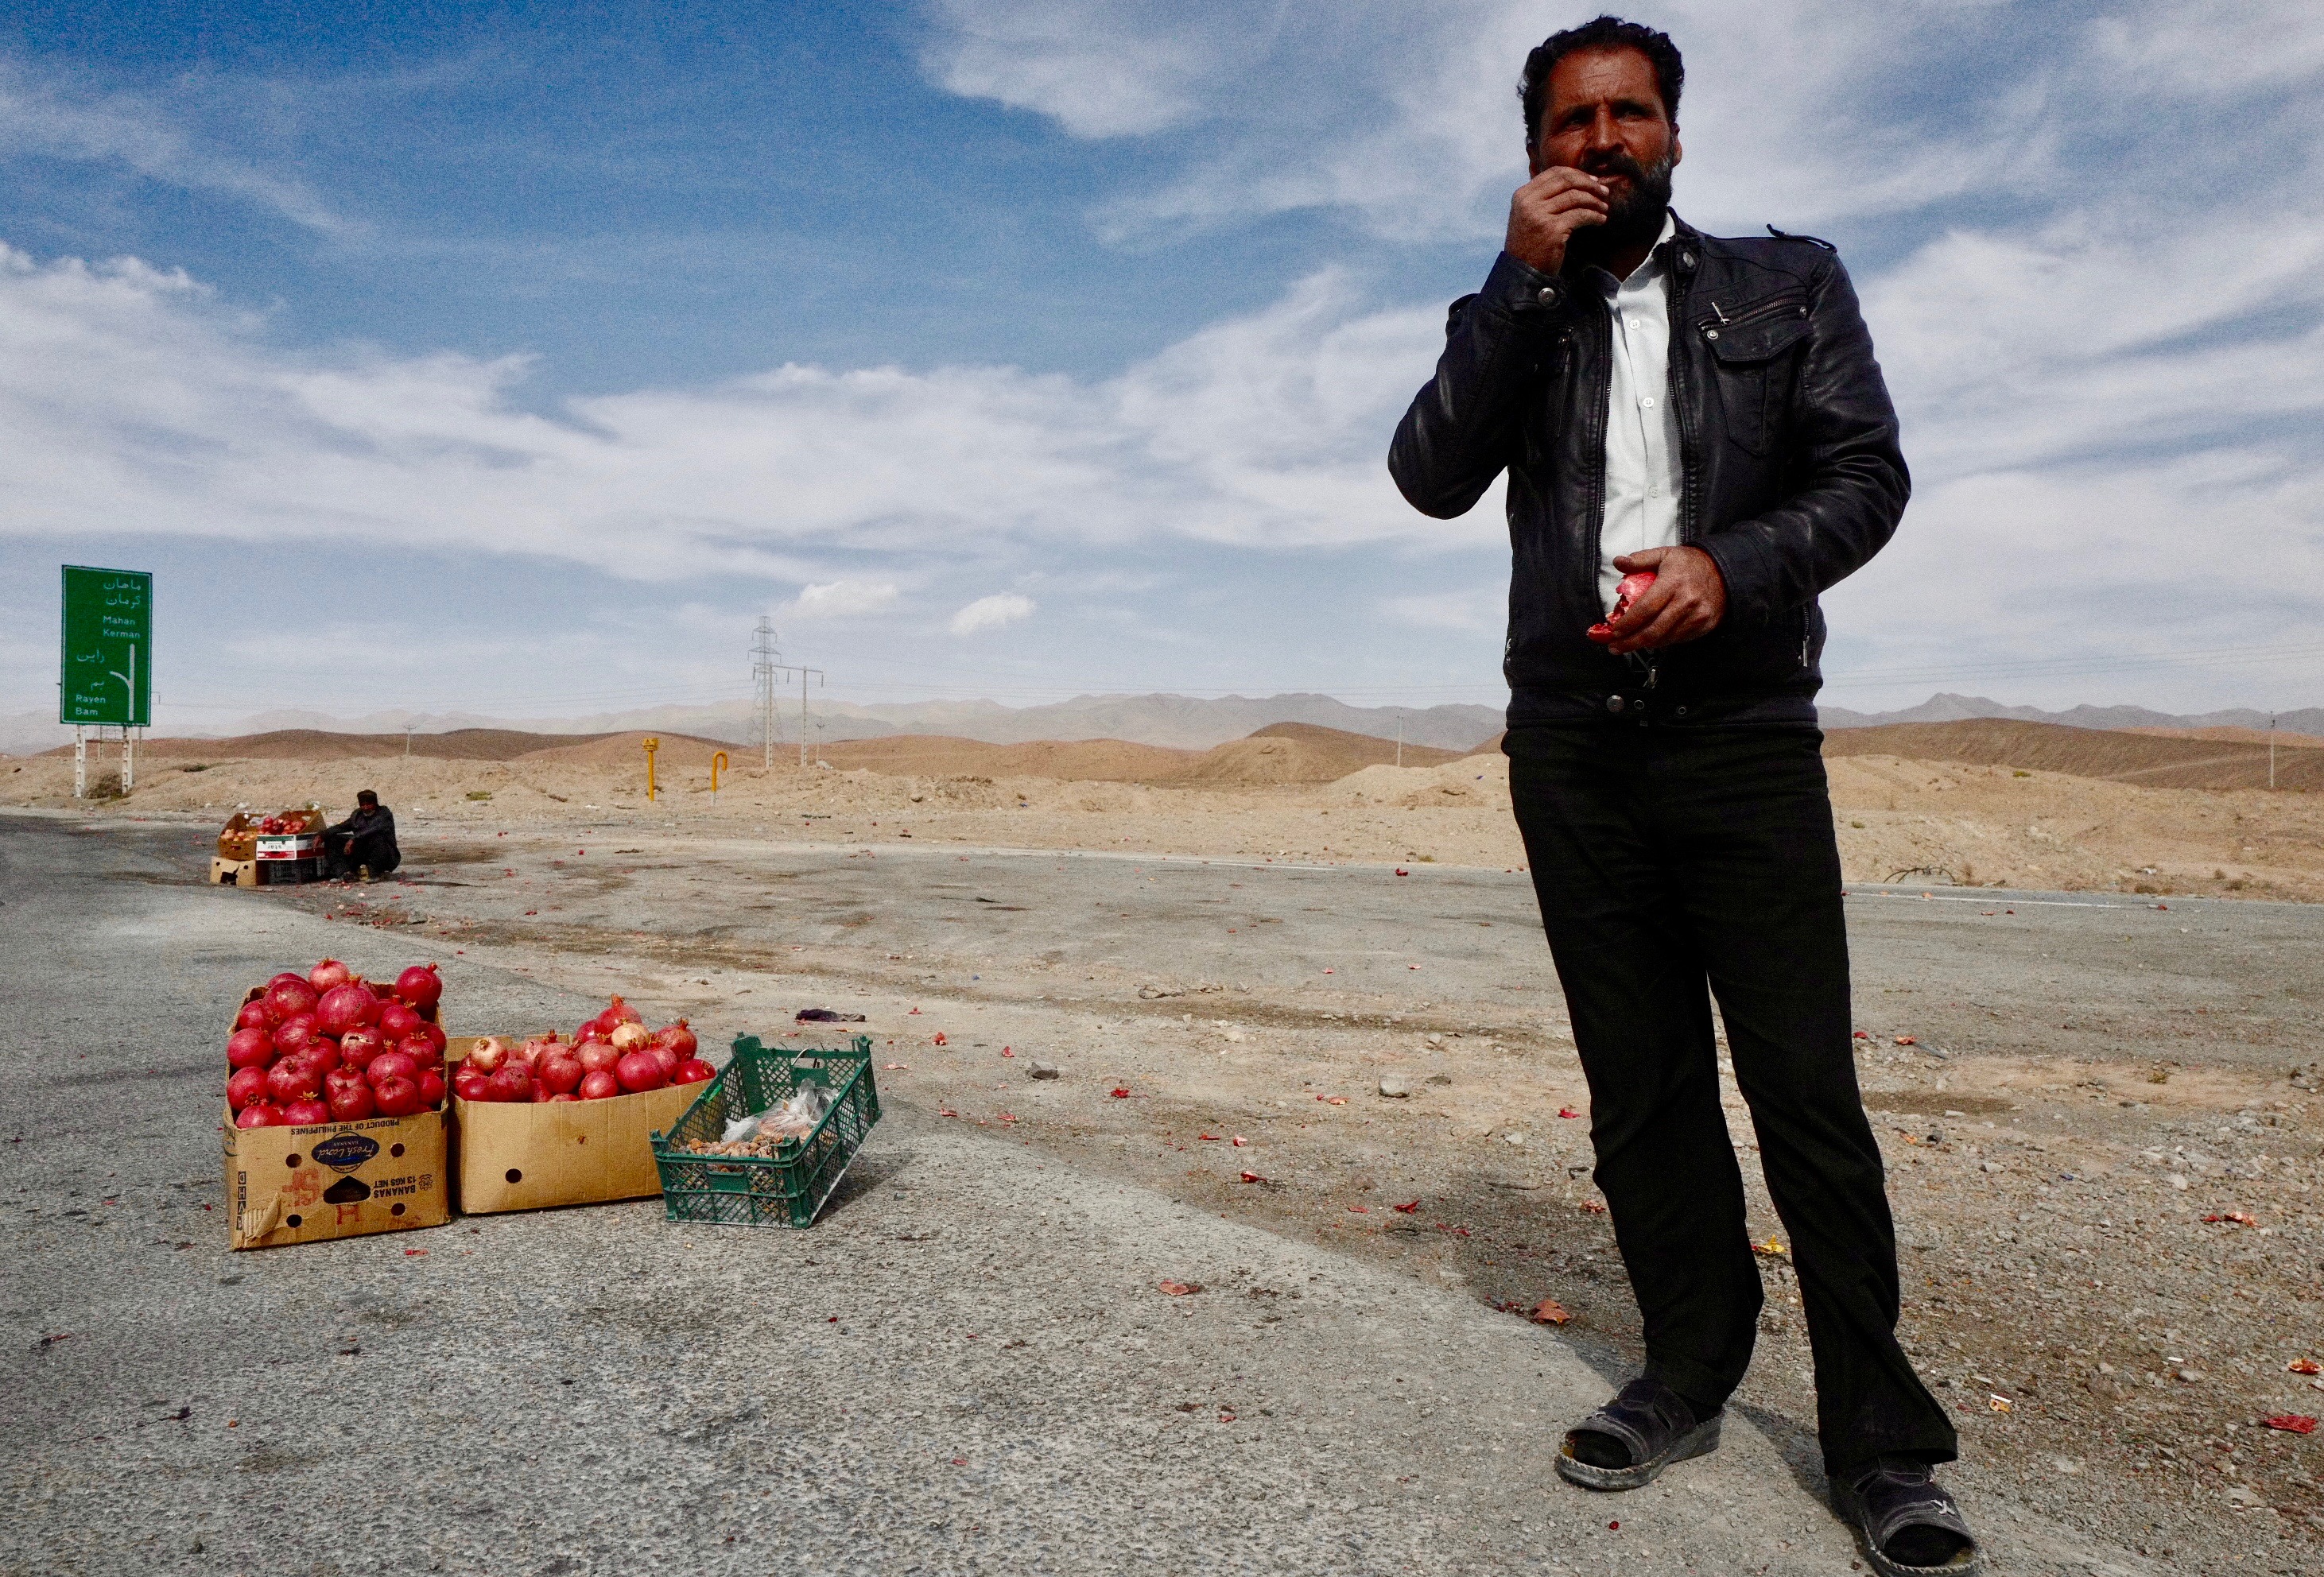 По дороге в Шираз стоит остановиться у соляного озера с розовыми берегами, осмотреть несколько заброшенных караван-сараев и пополнить запас гранатов, которые продают на автостраде местные жители